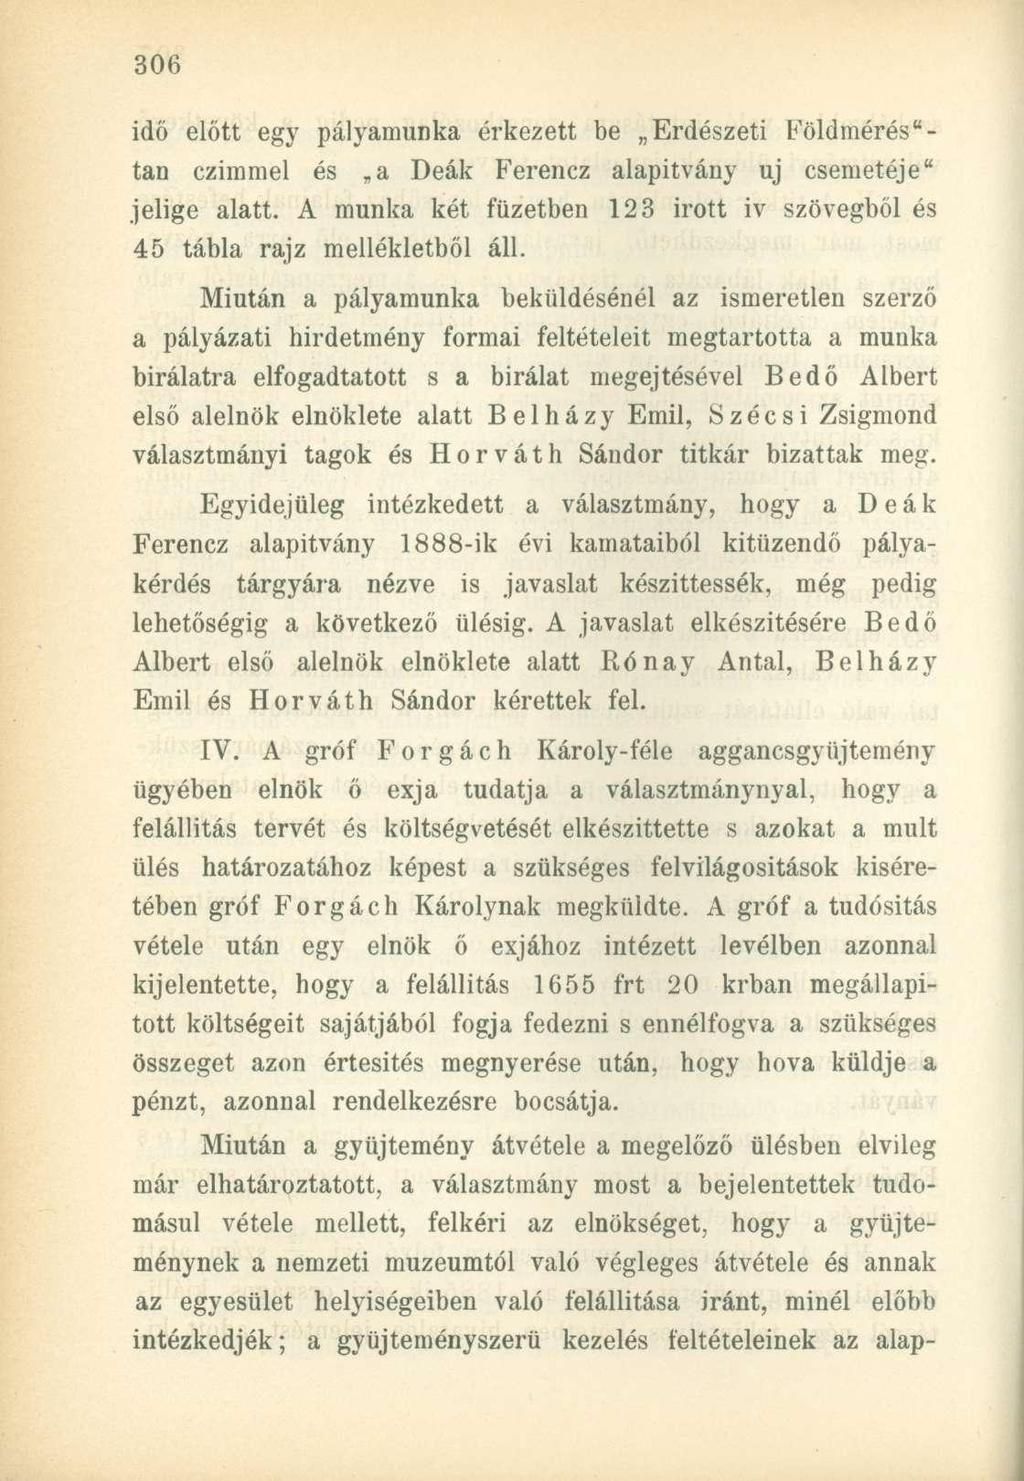 idő előtt egy pályamunka érkezett be Erdészeti Földmérés" - tan czimmel és a Deák Ferencz alapitvány uj csemetéje" jelige alatt.